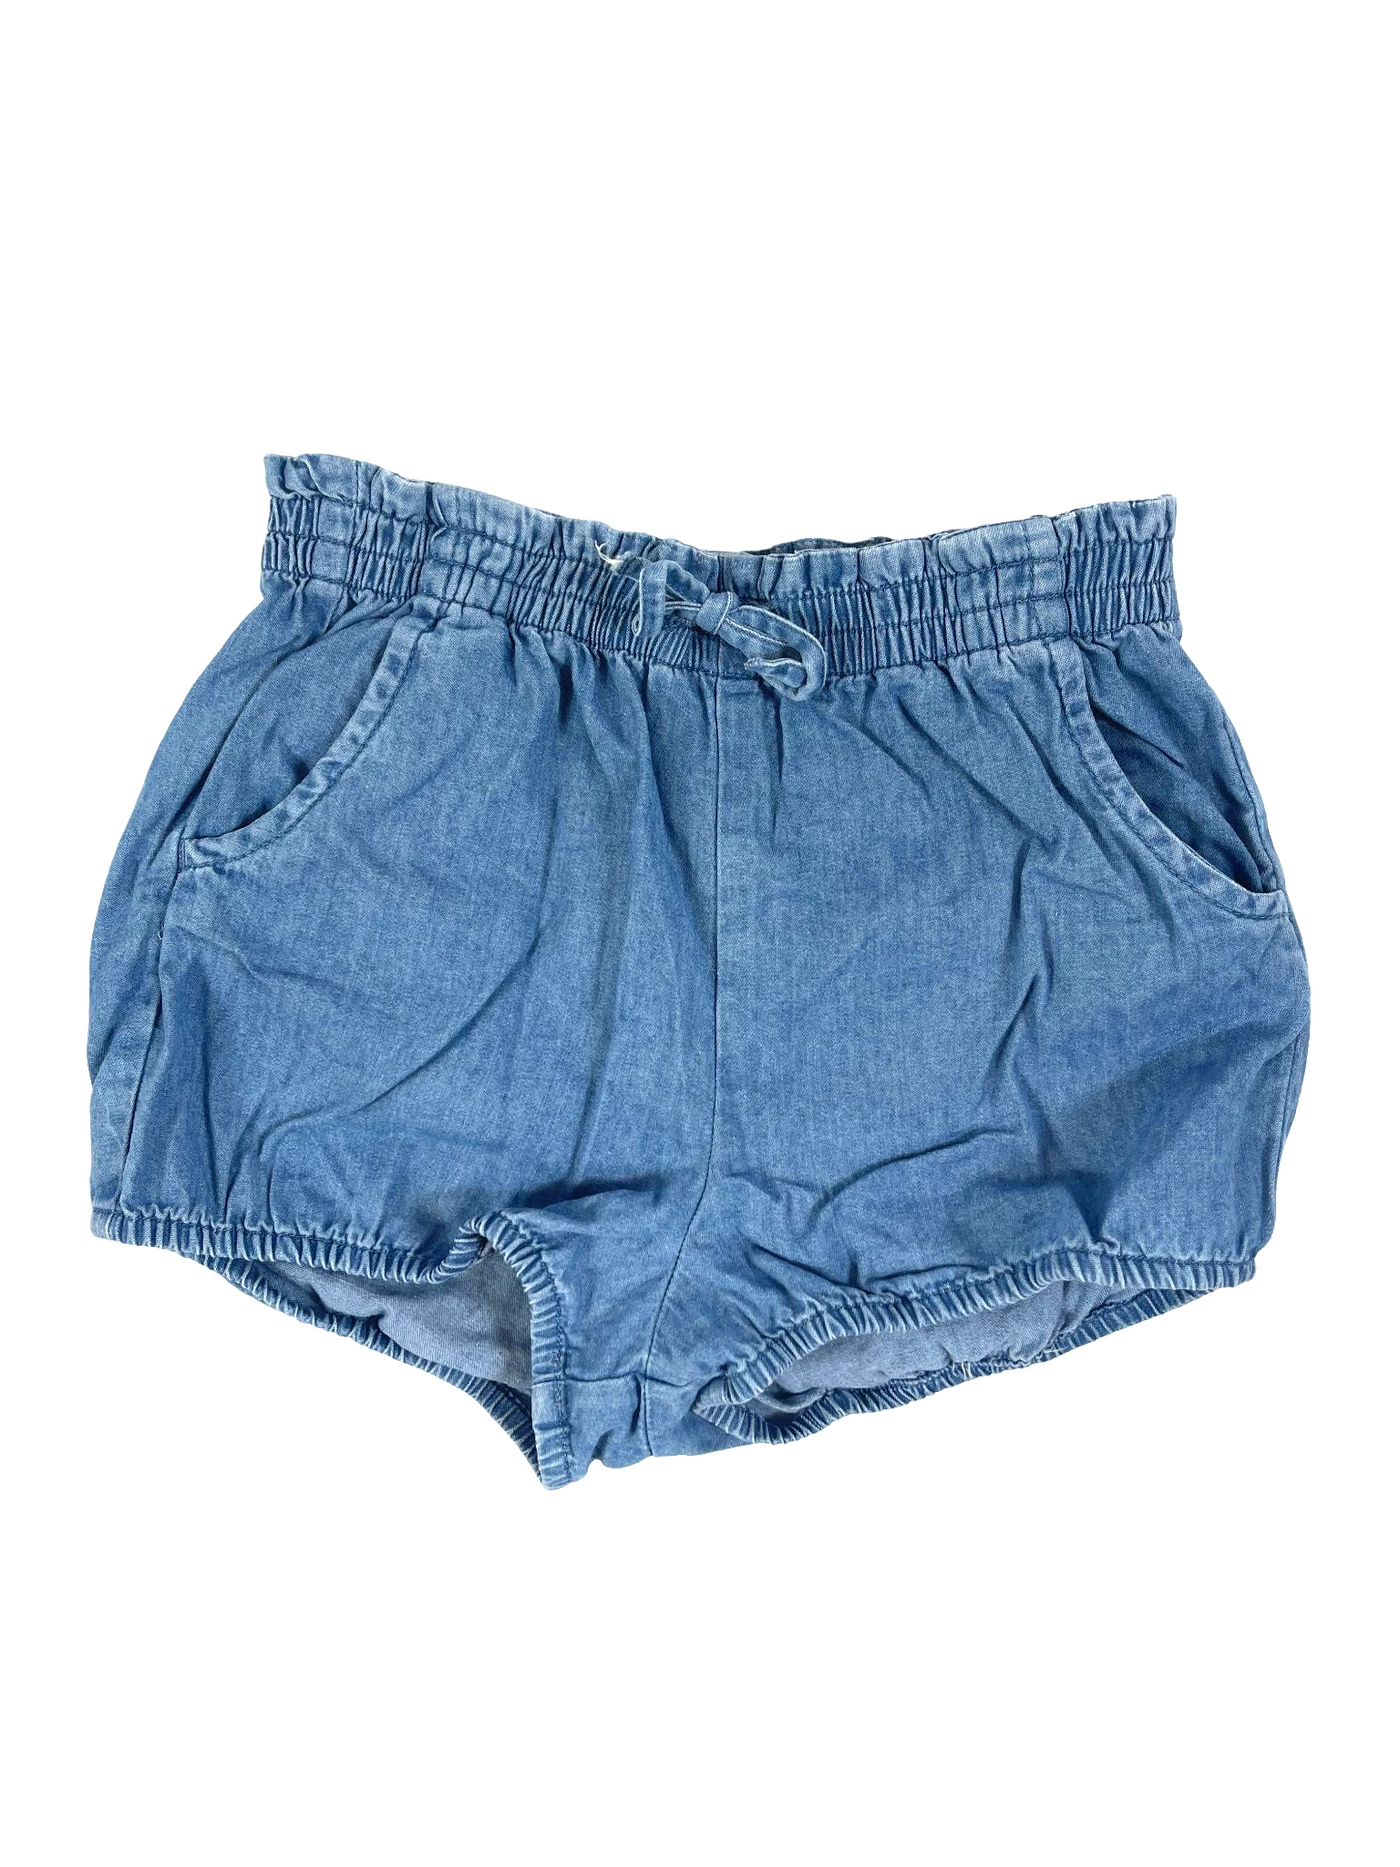 Gap Jean Shorts(3Y)